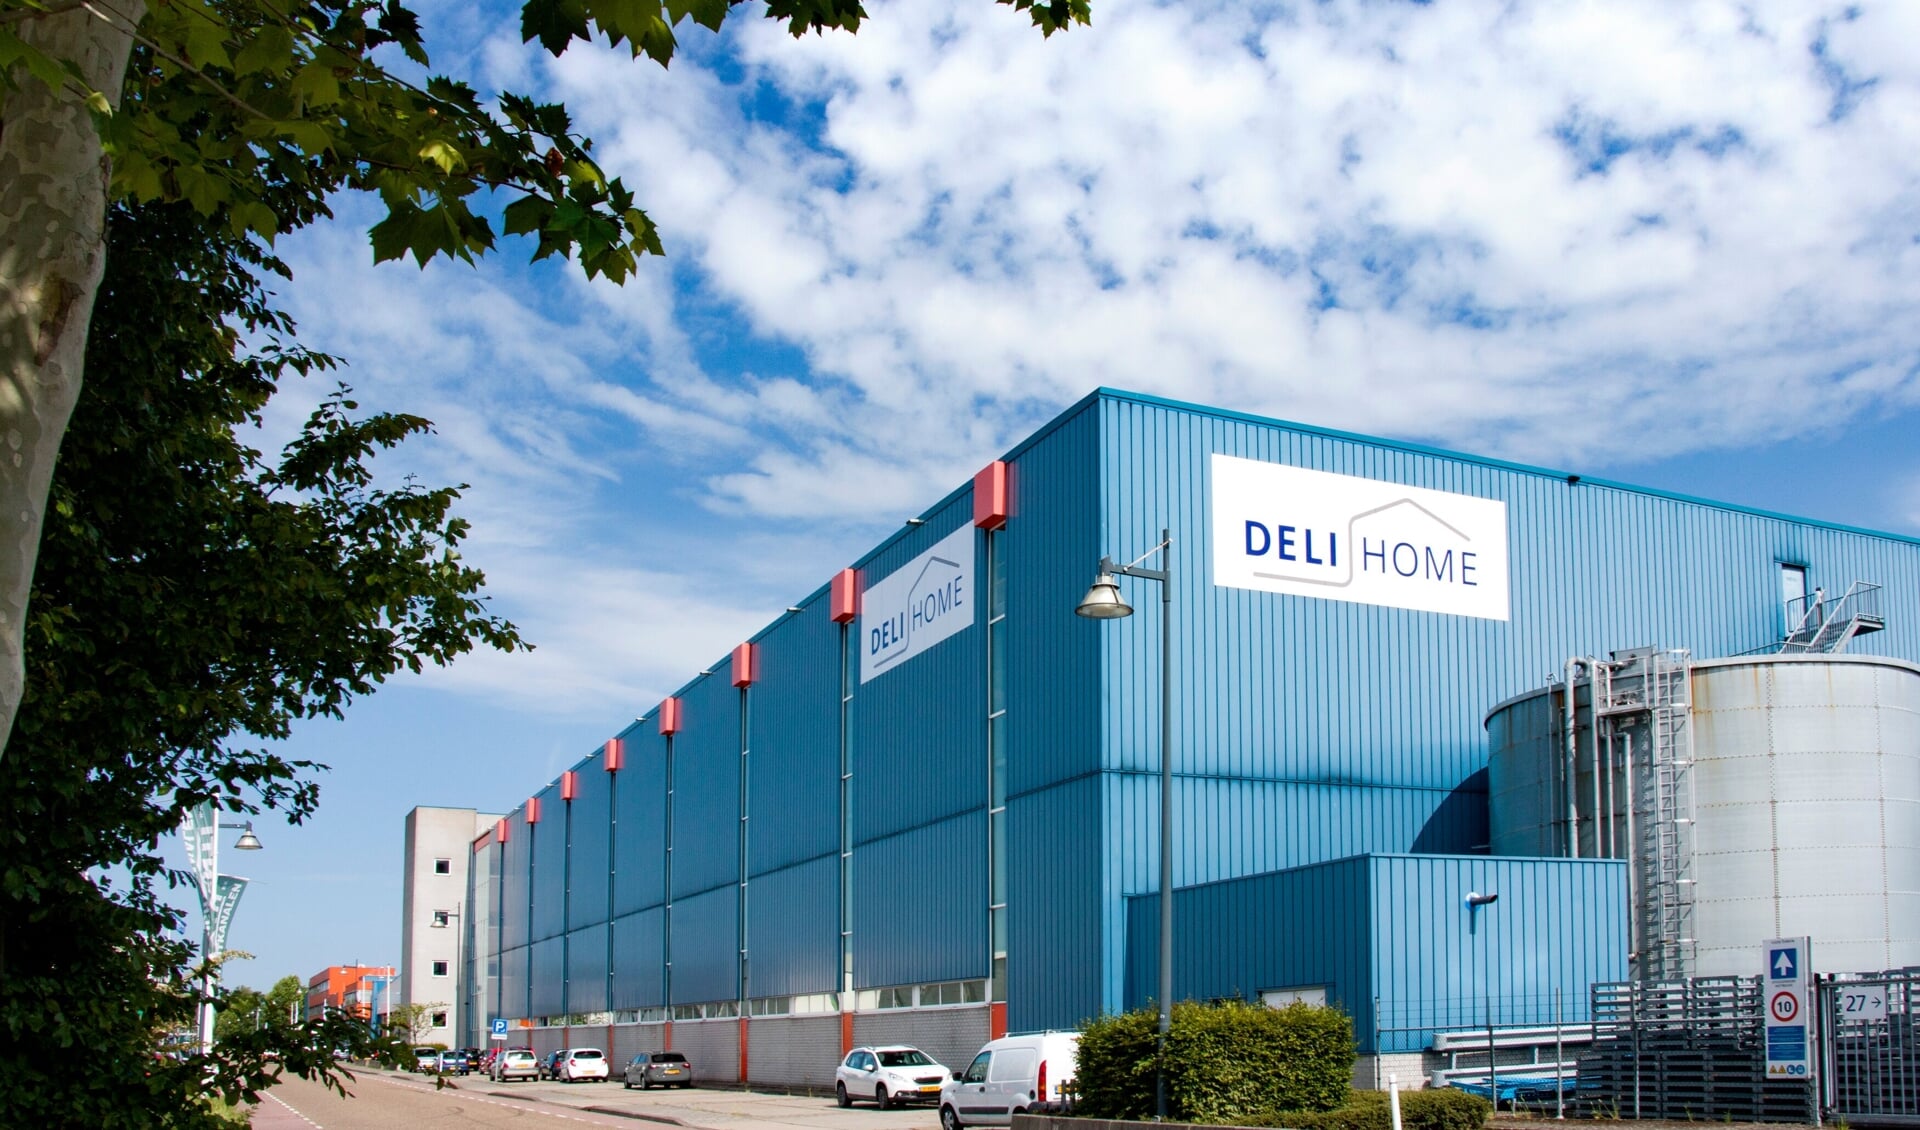 Het magazijn van Deli Home Netherlands is voorzien van Deli Home logo's